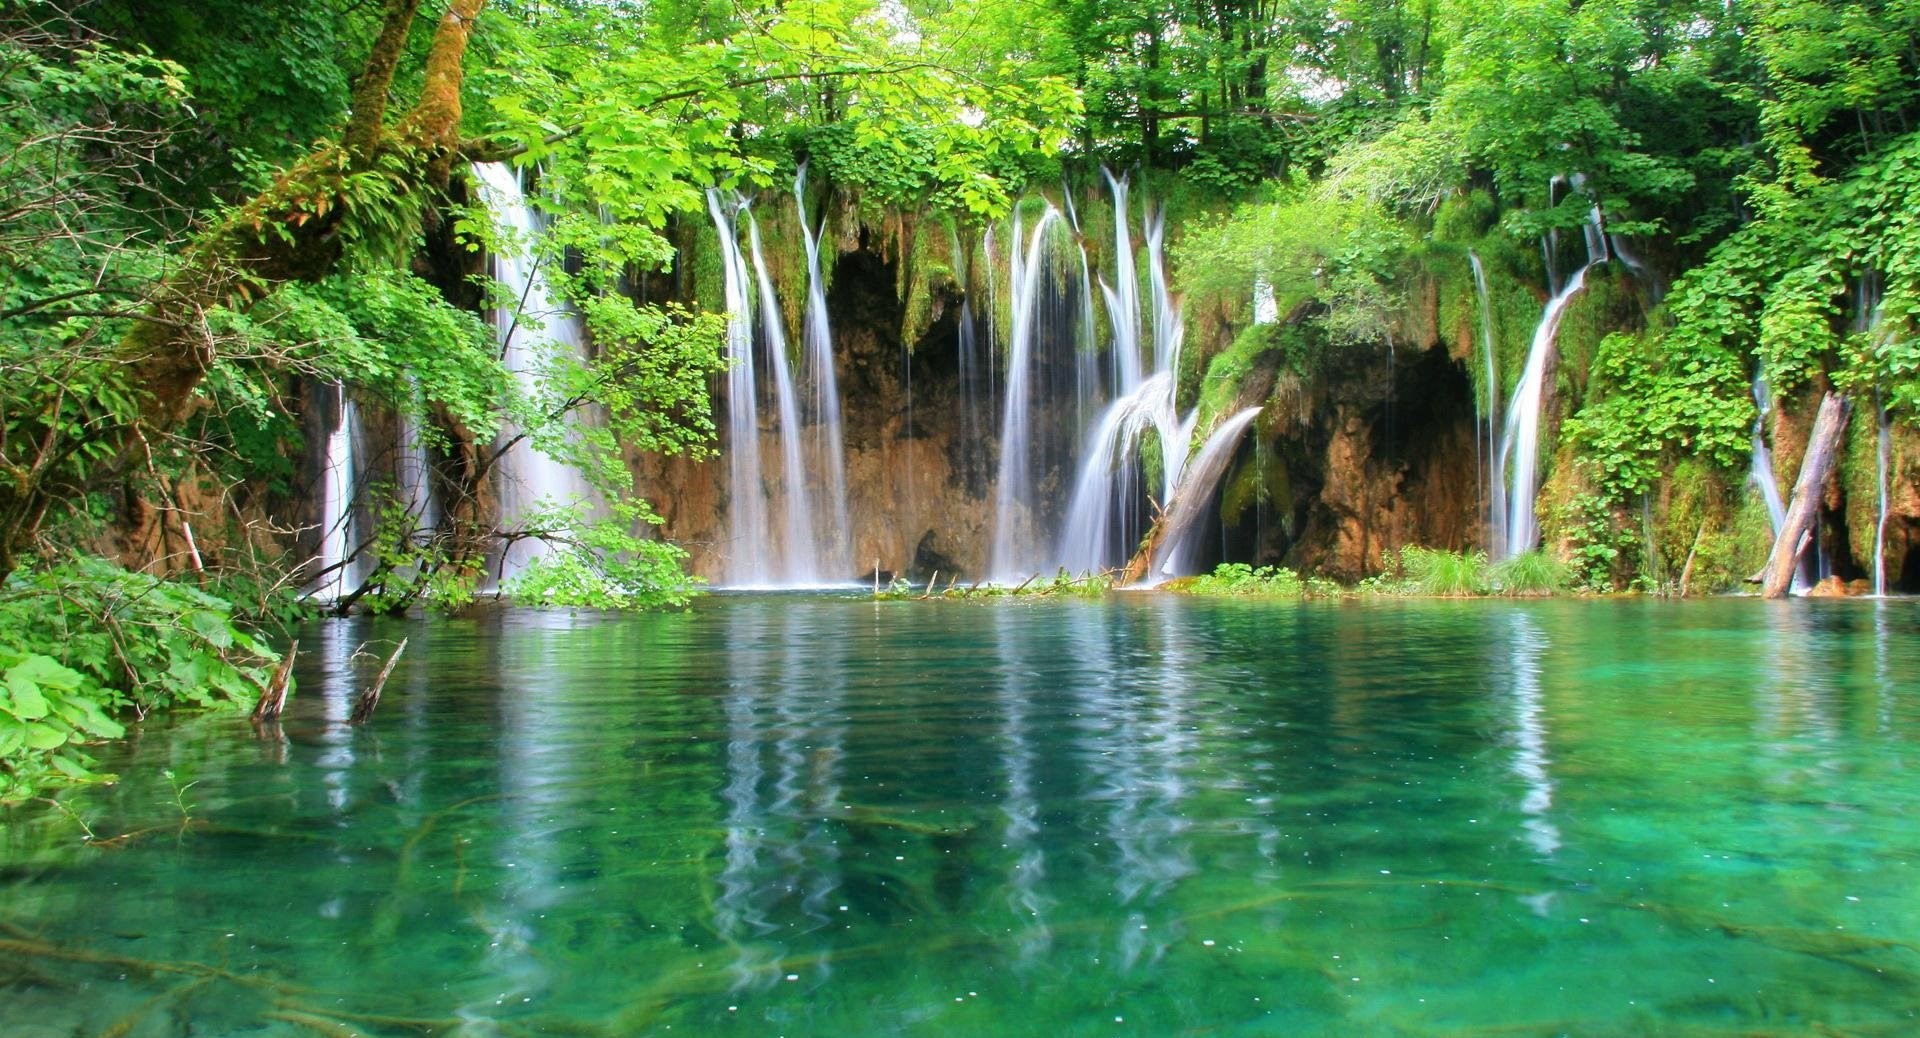 عکس آبشار های کوچک و بزرگ منتهی به رودخانه در جنگل